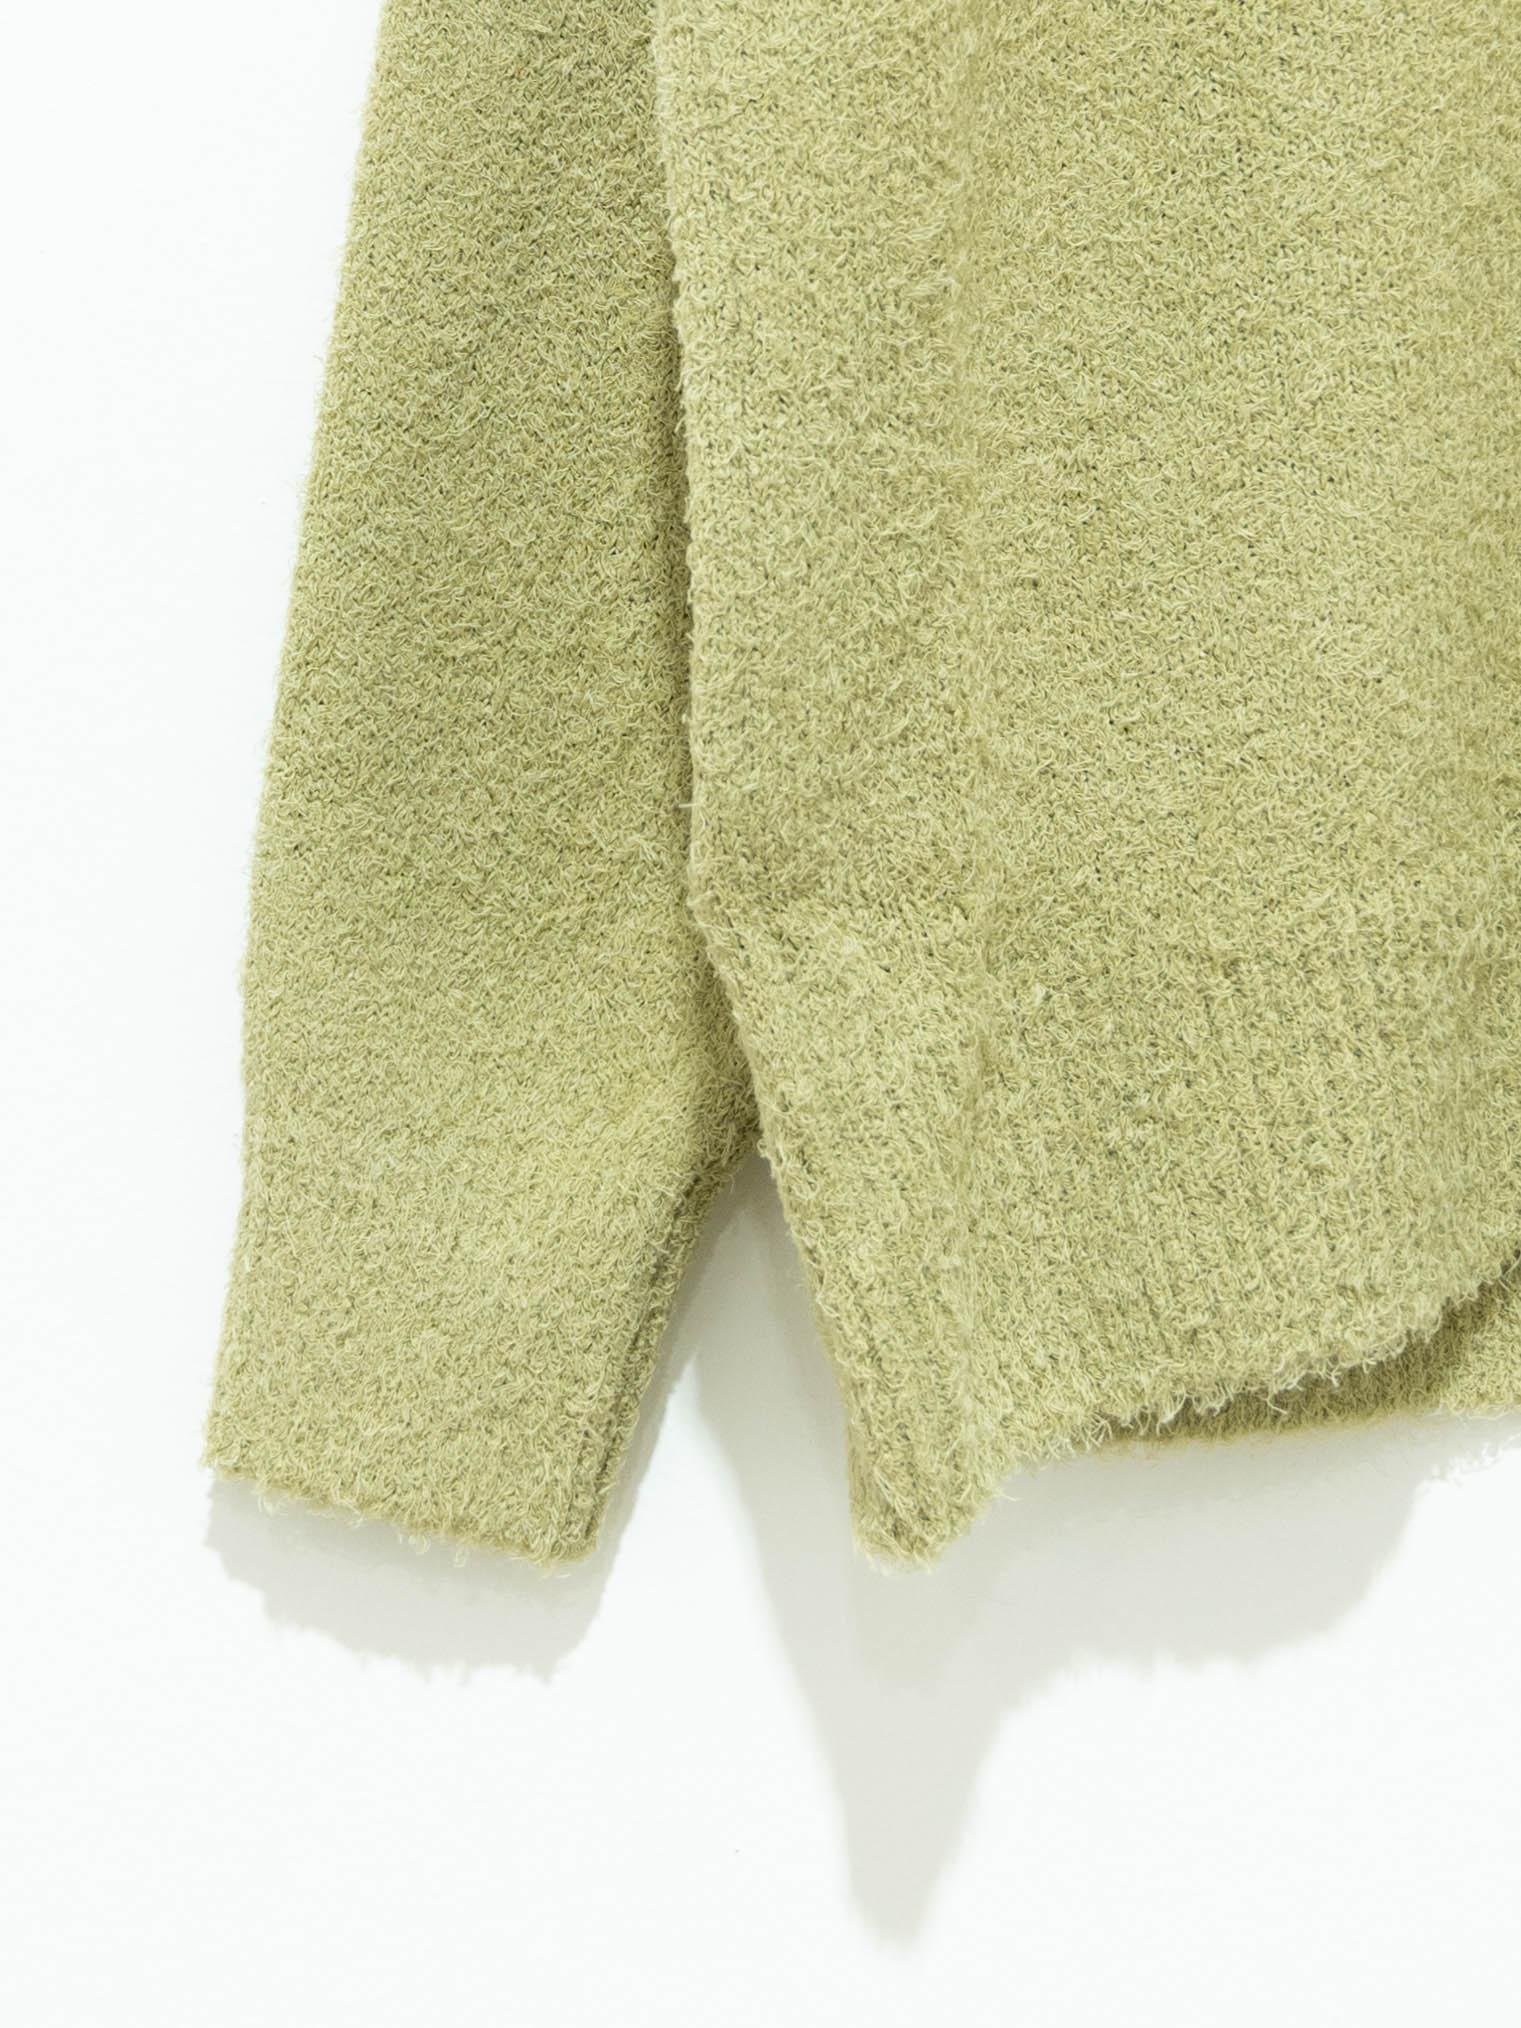 Namu Shop - Auralee Cotton Linen Cut Shaggy Knit Pullover - Light Green